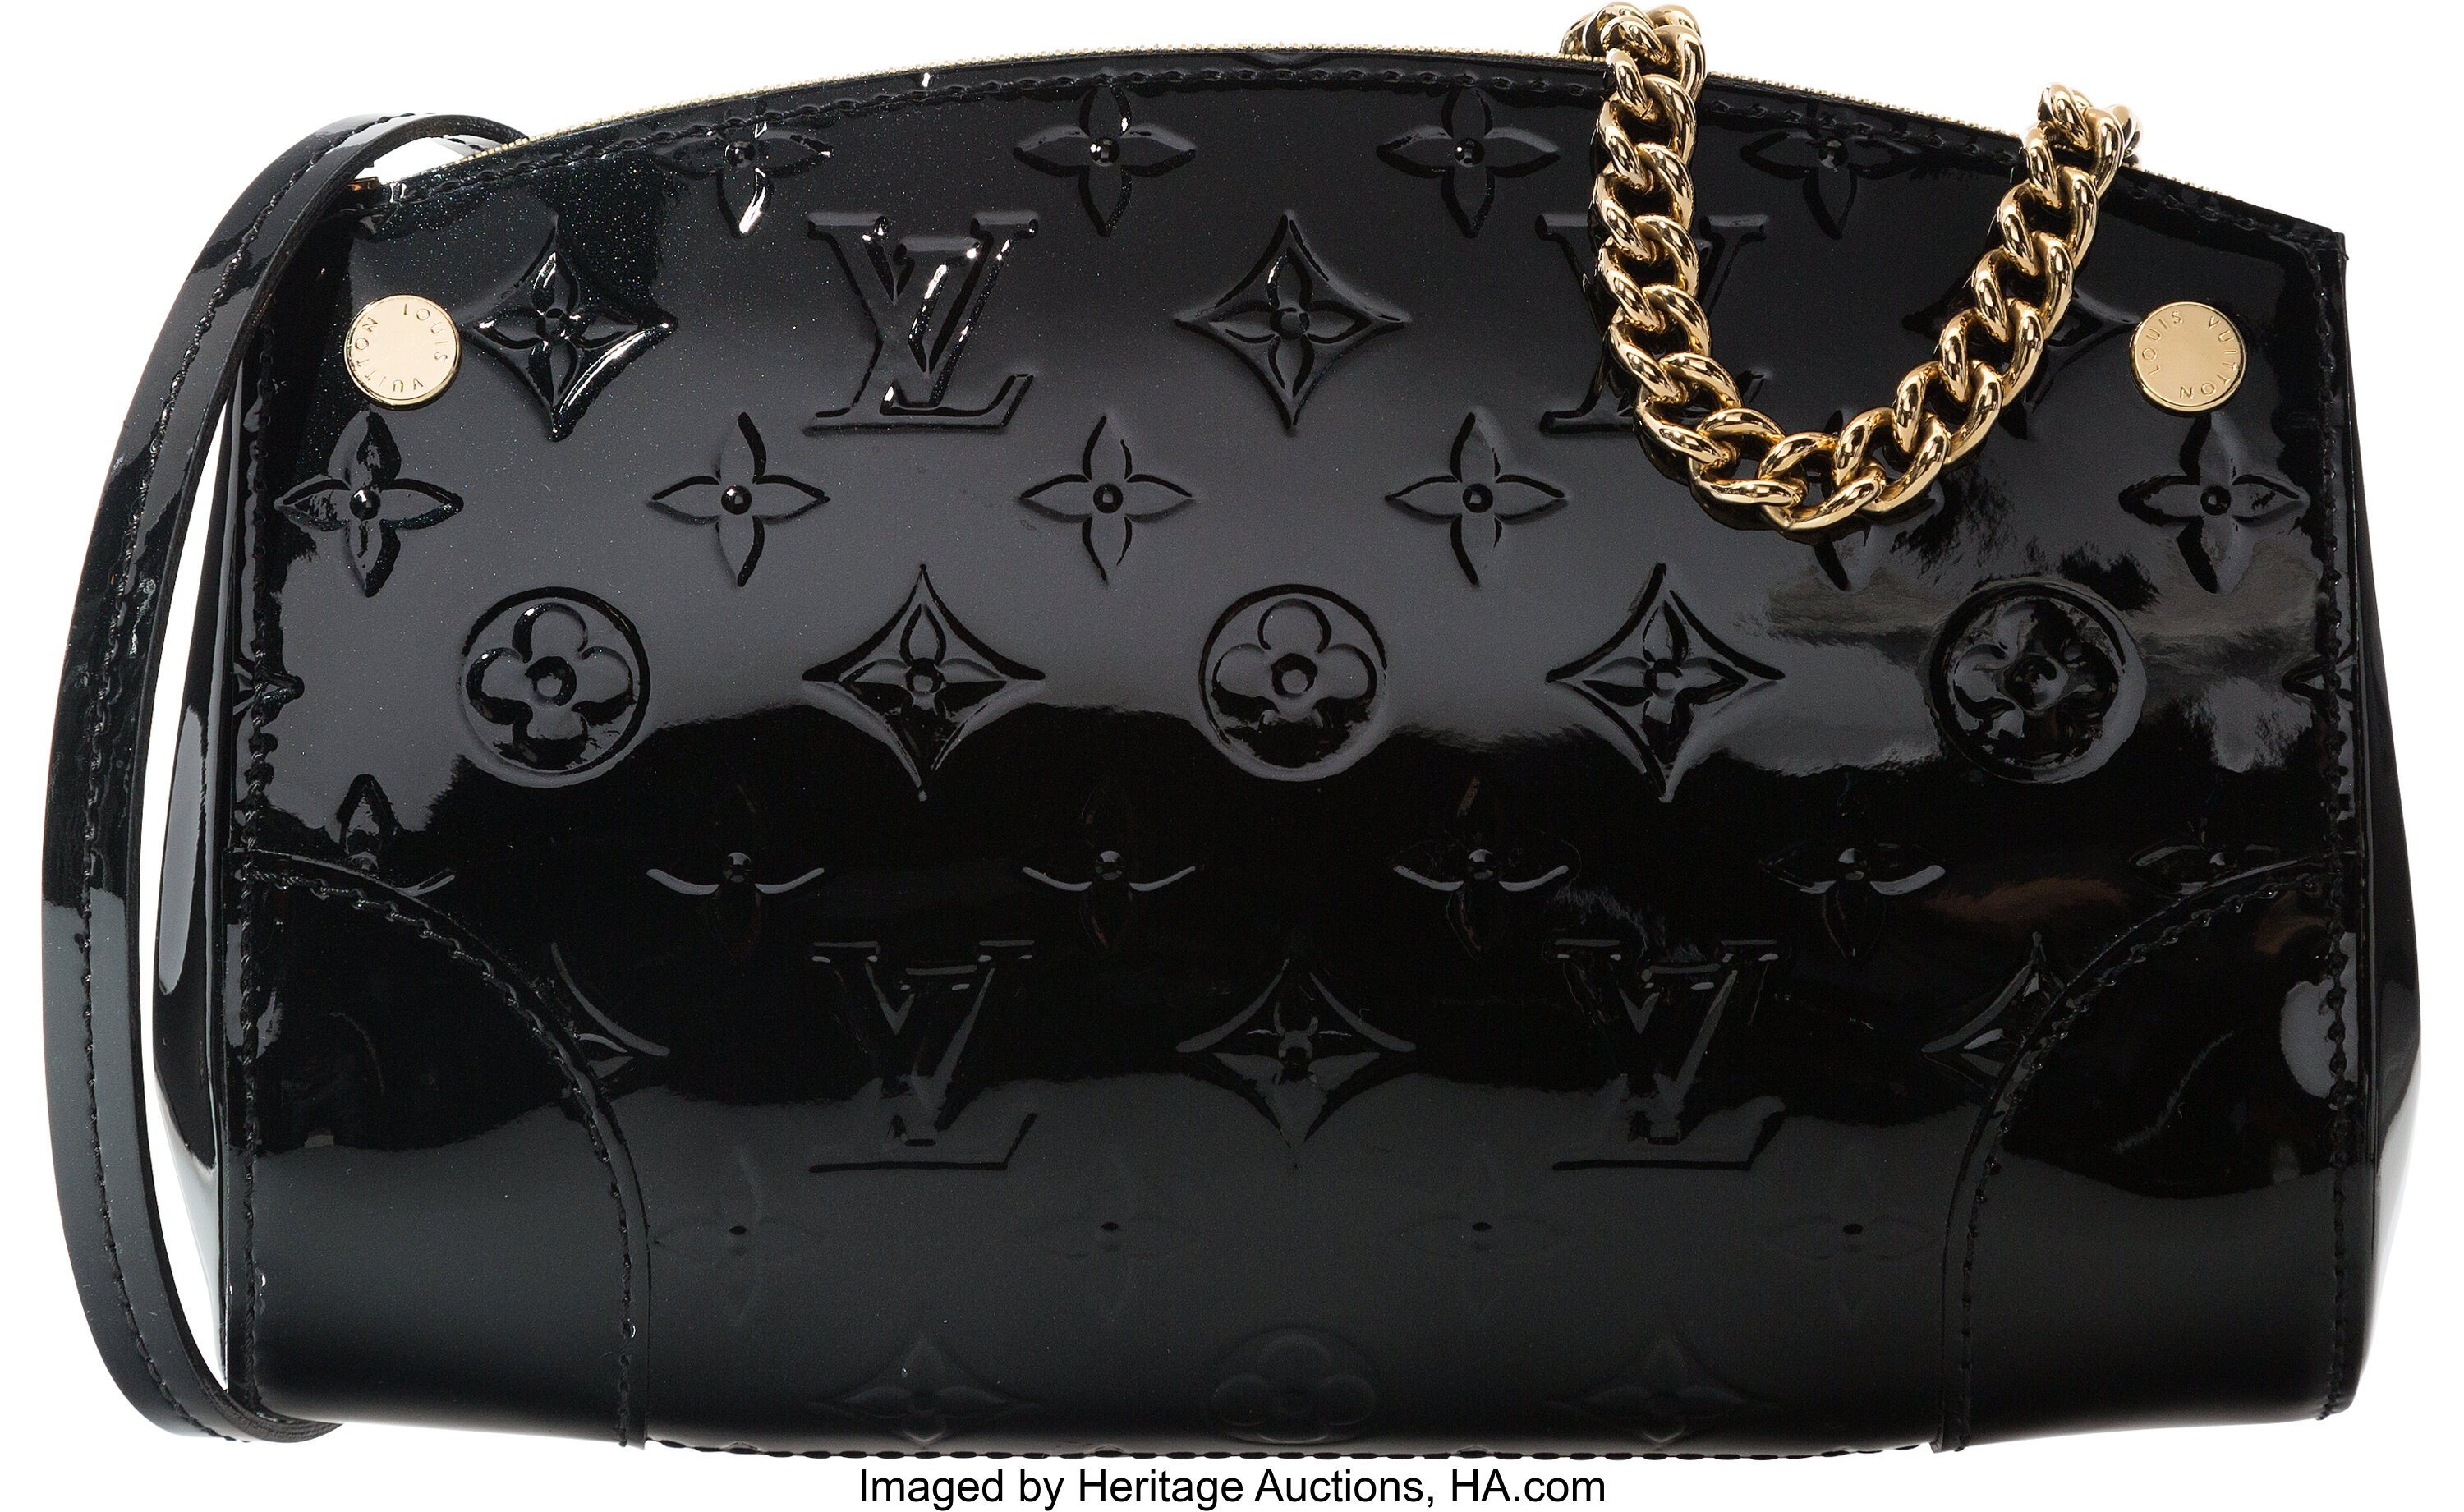 Louis Vuitton Black Monogram Vernis Leather Santa Monica Bag., Lot #58468